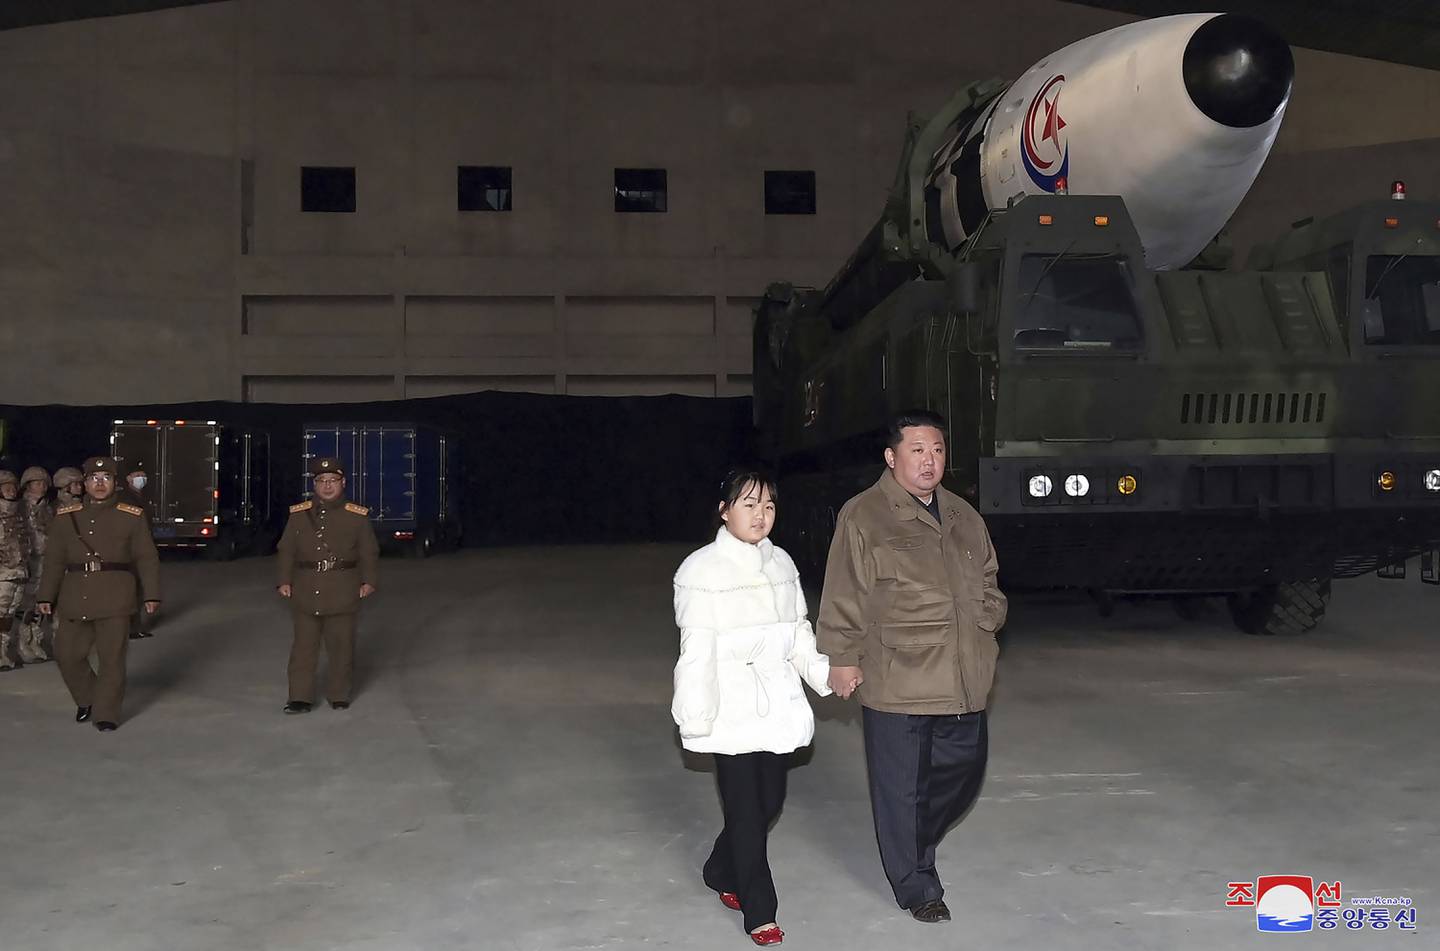 Kim Jong-un hadde med seg datteren på inspeksjon av et missil ved flyplassen i Pyongyang 18. november, ifølge bildet fra Nord-Koreas myndigheter.